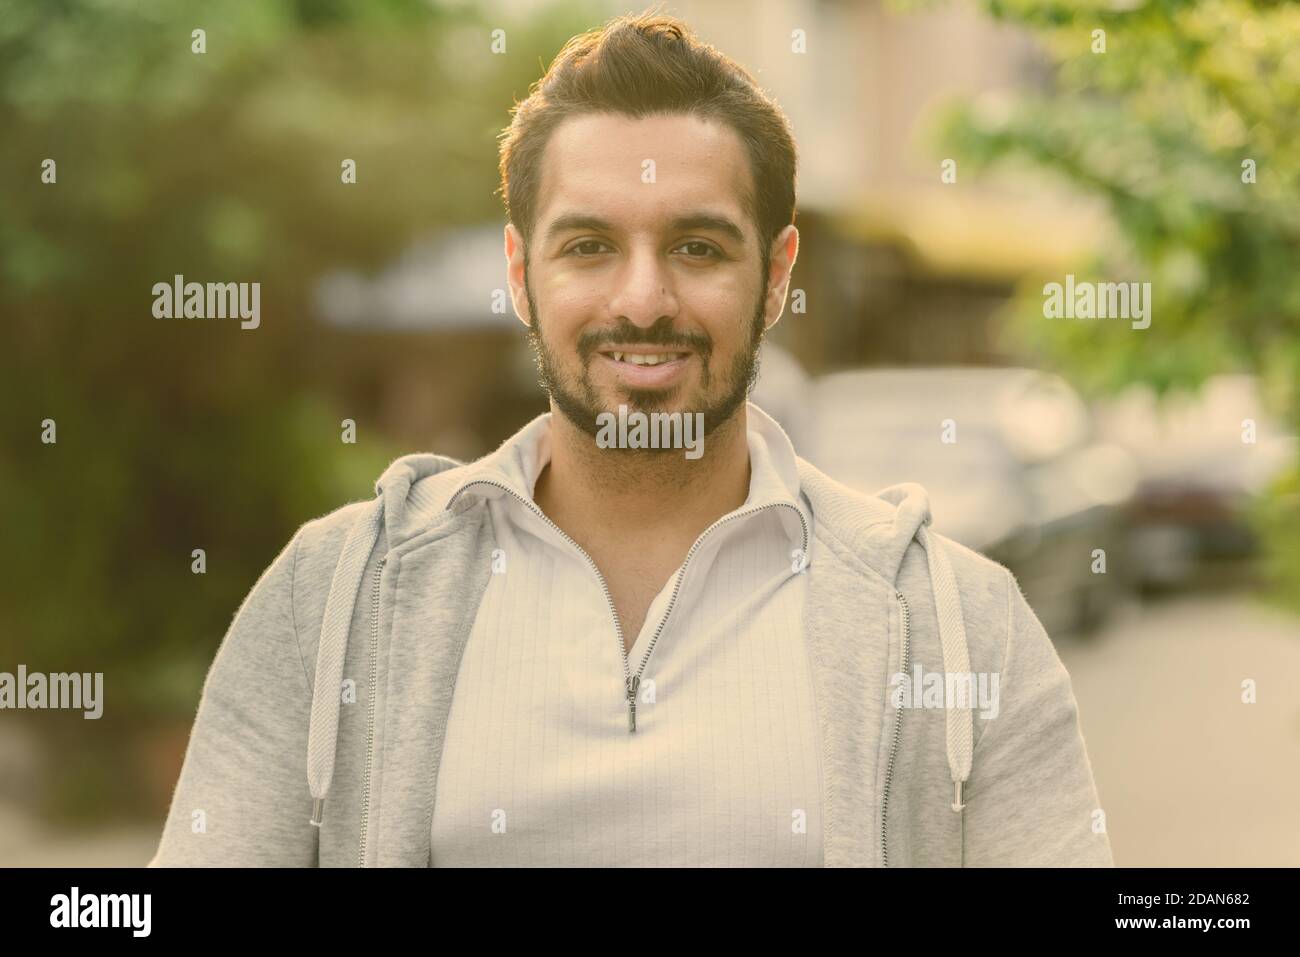 Glückliche junge Aussehenden bärtigen indischen Mann lächelnd im Freien Stockfoto